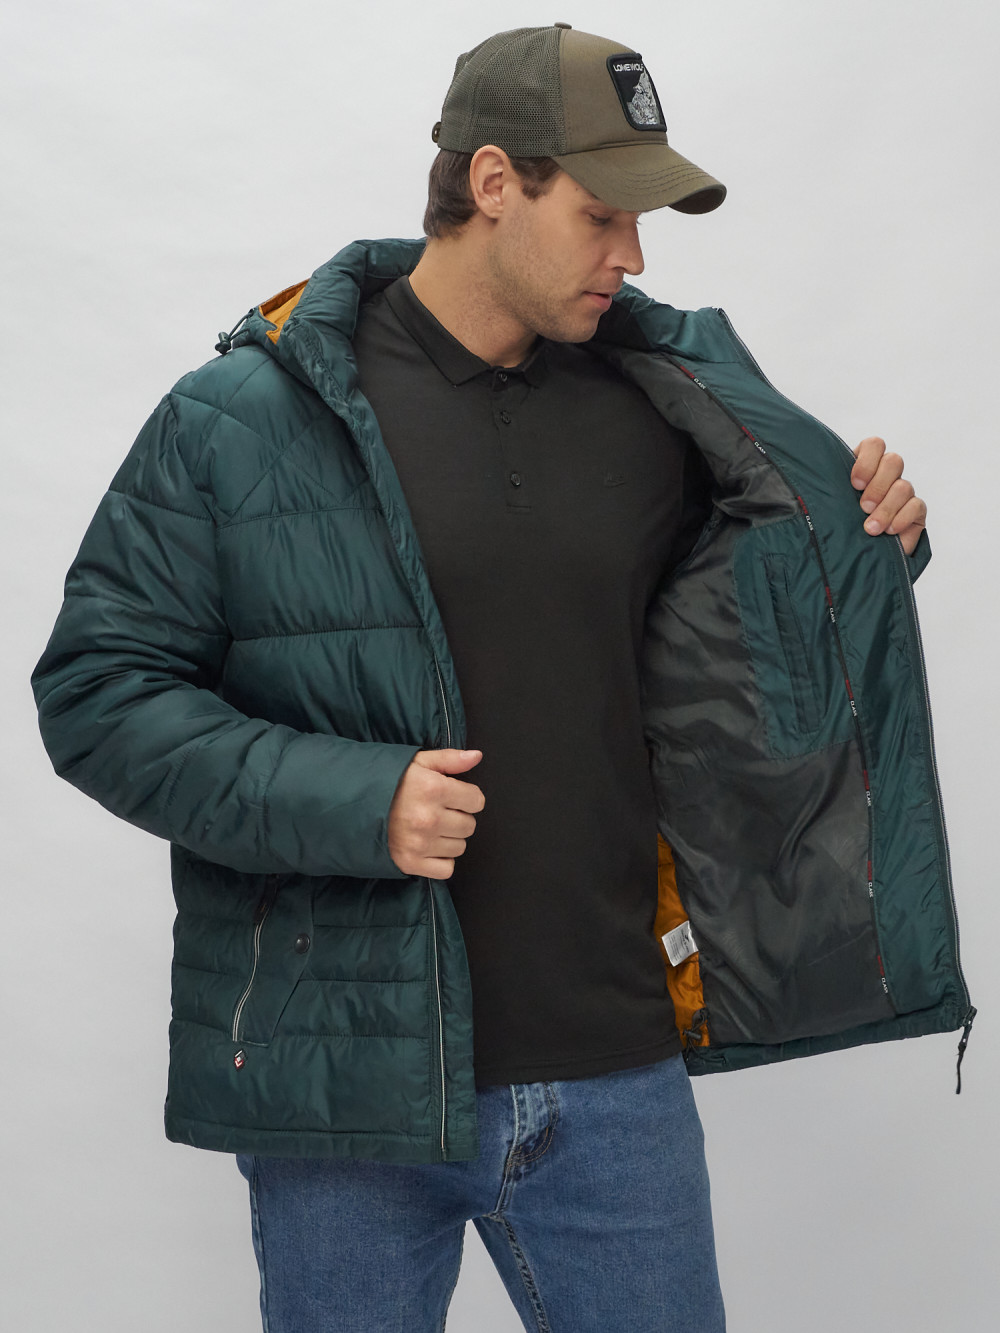 Купить куртку мужскую спортивную весеннюю оптом от производителя недорого в Москве 62179TZ 1